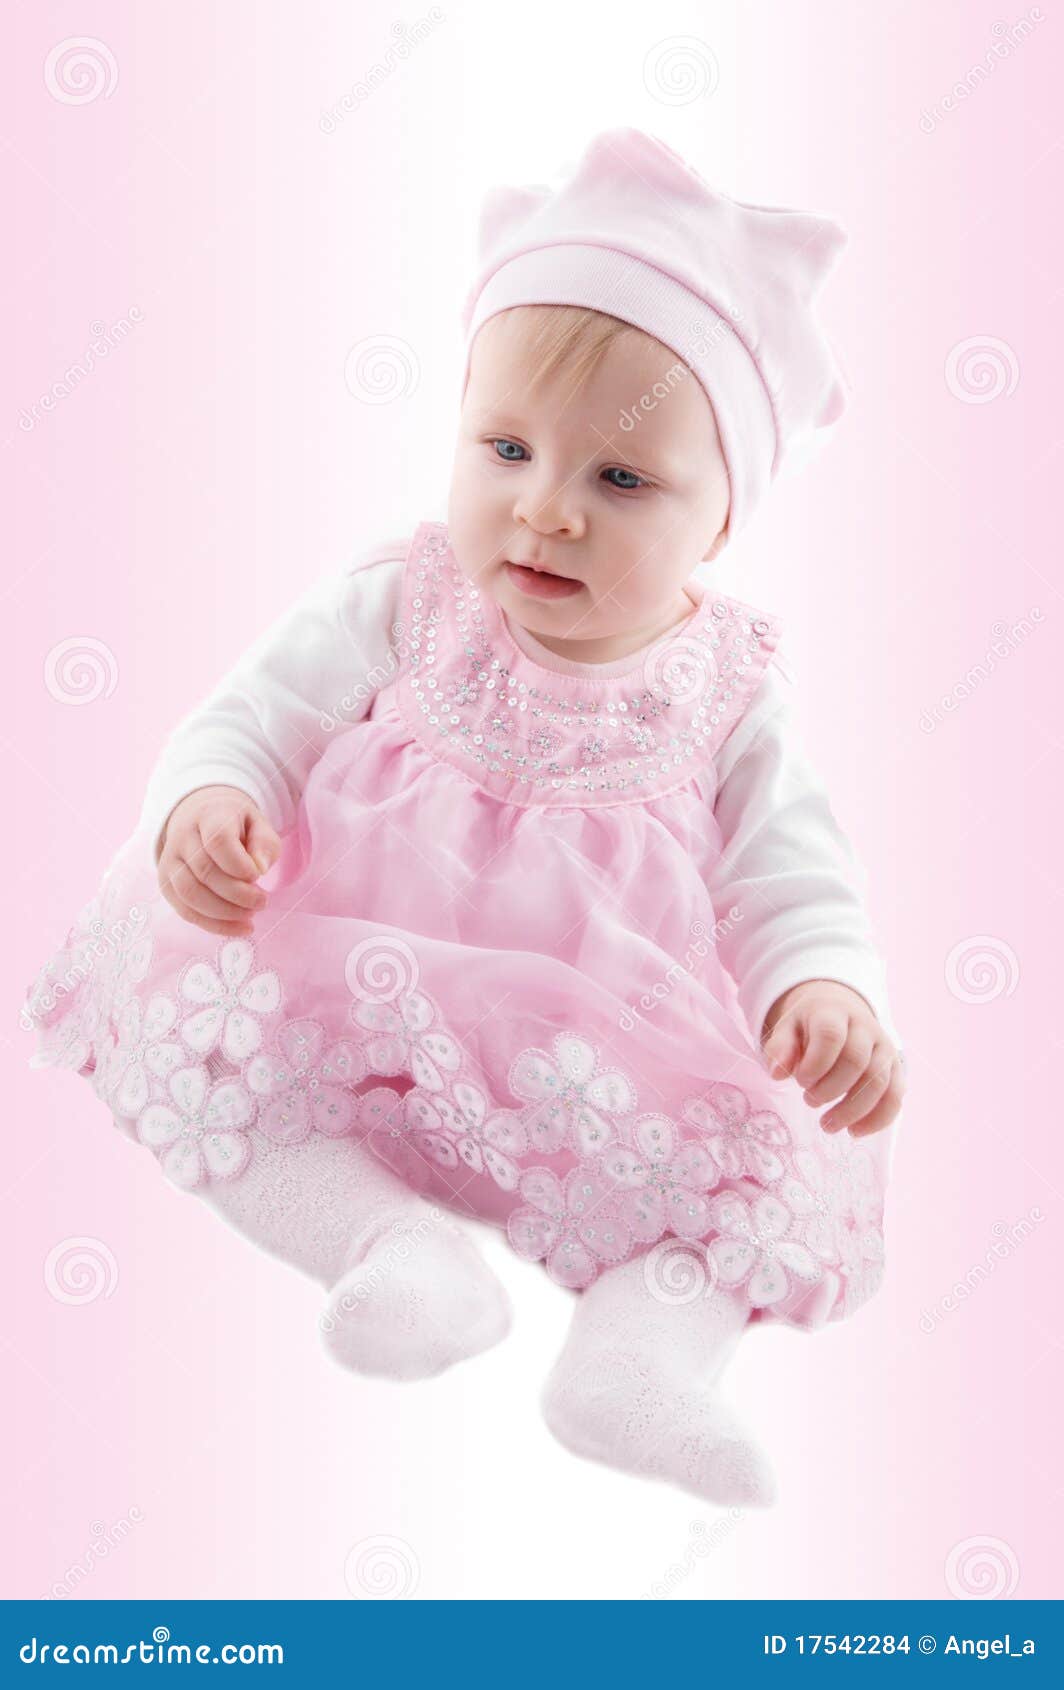 fancy dresses for newborn baby girl